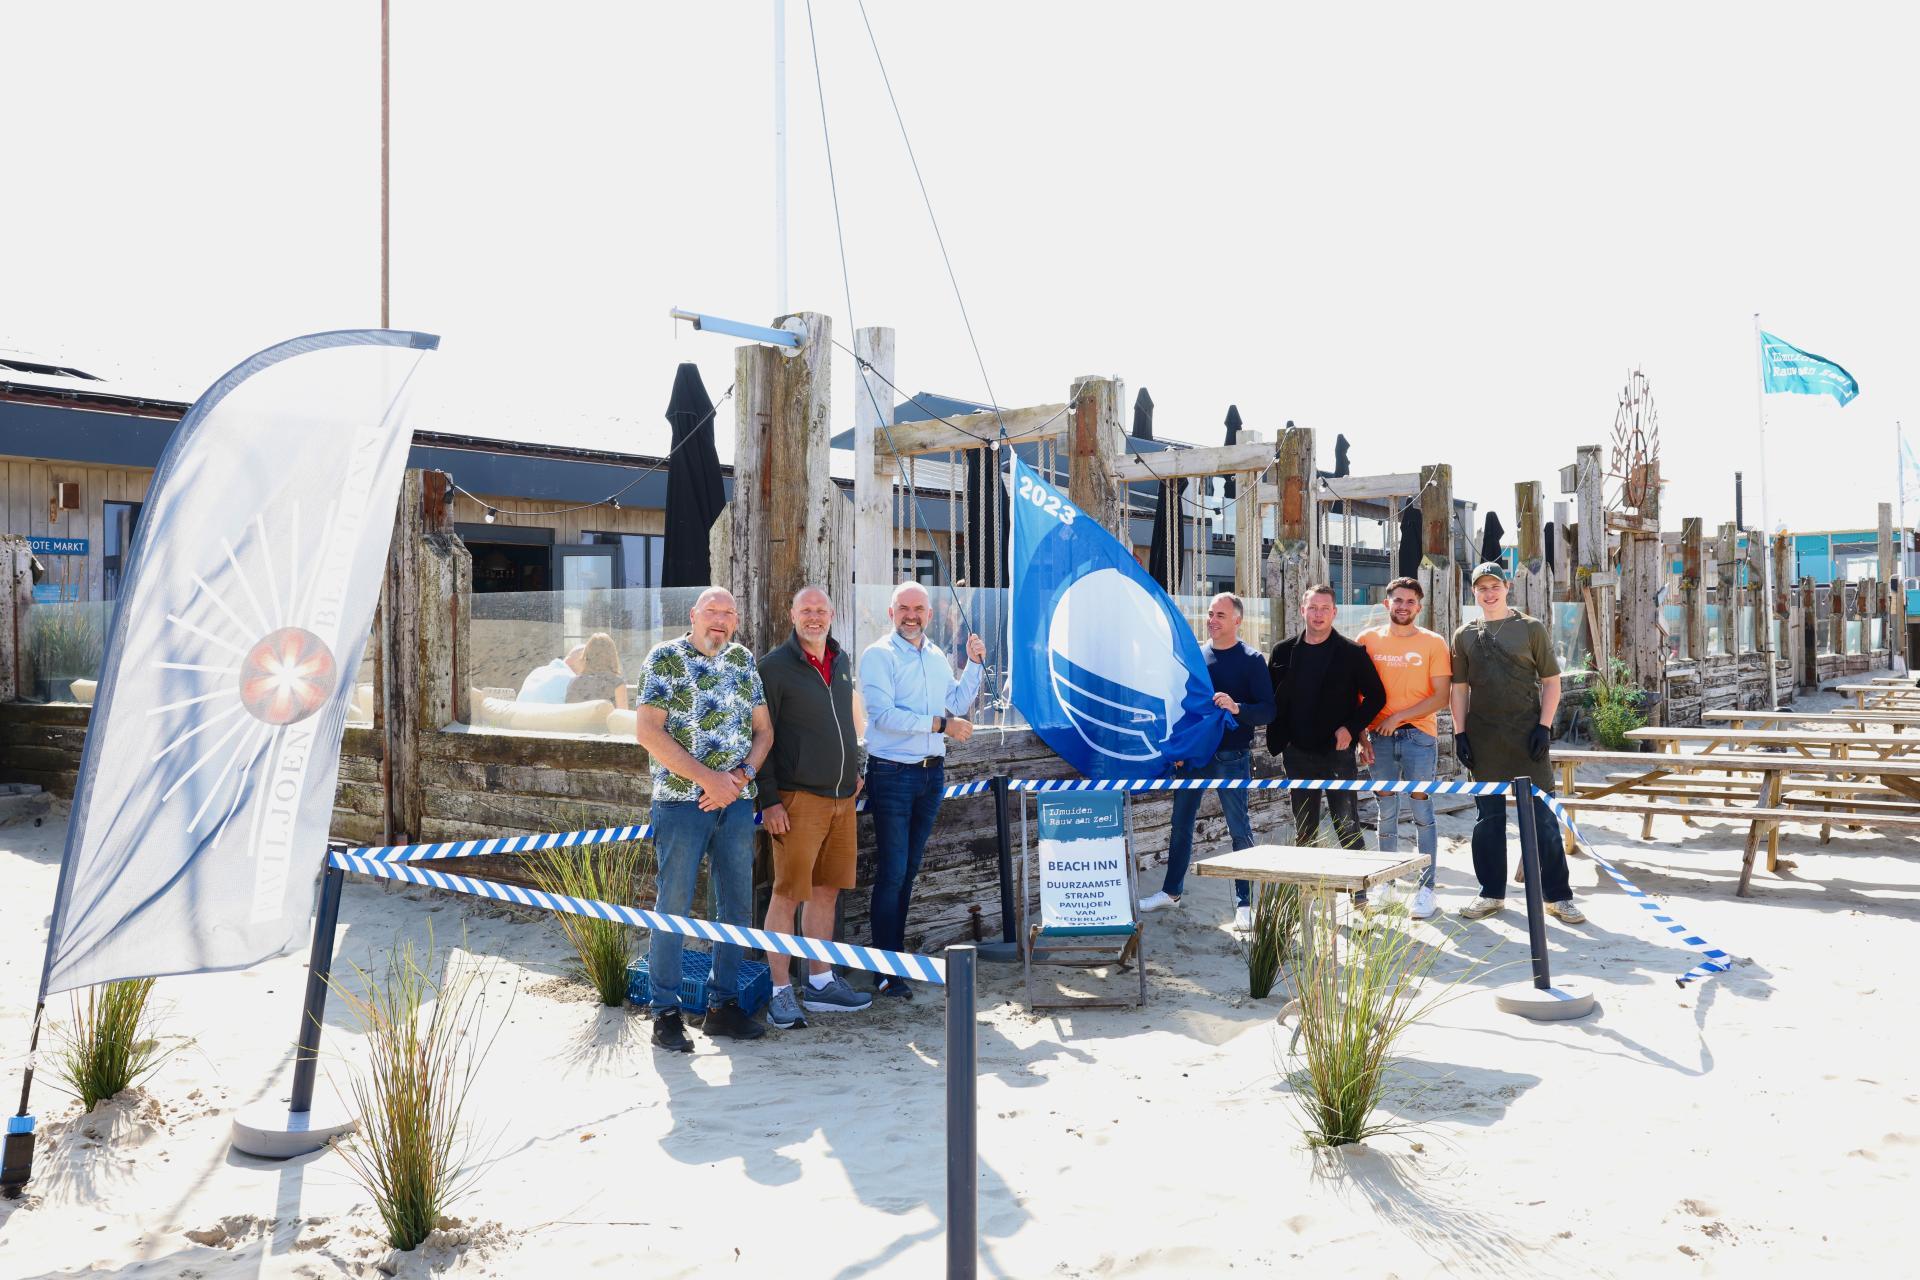 Wethouder Jeroen Verwoort hijst in IJmuiden bij paviljoen Beach Inn de blauwe vlag